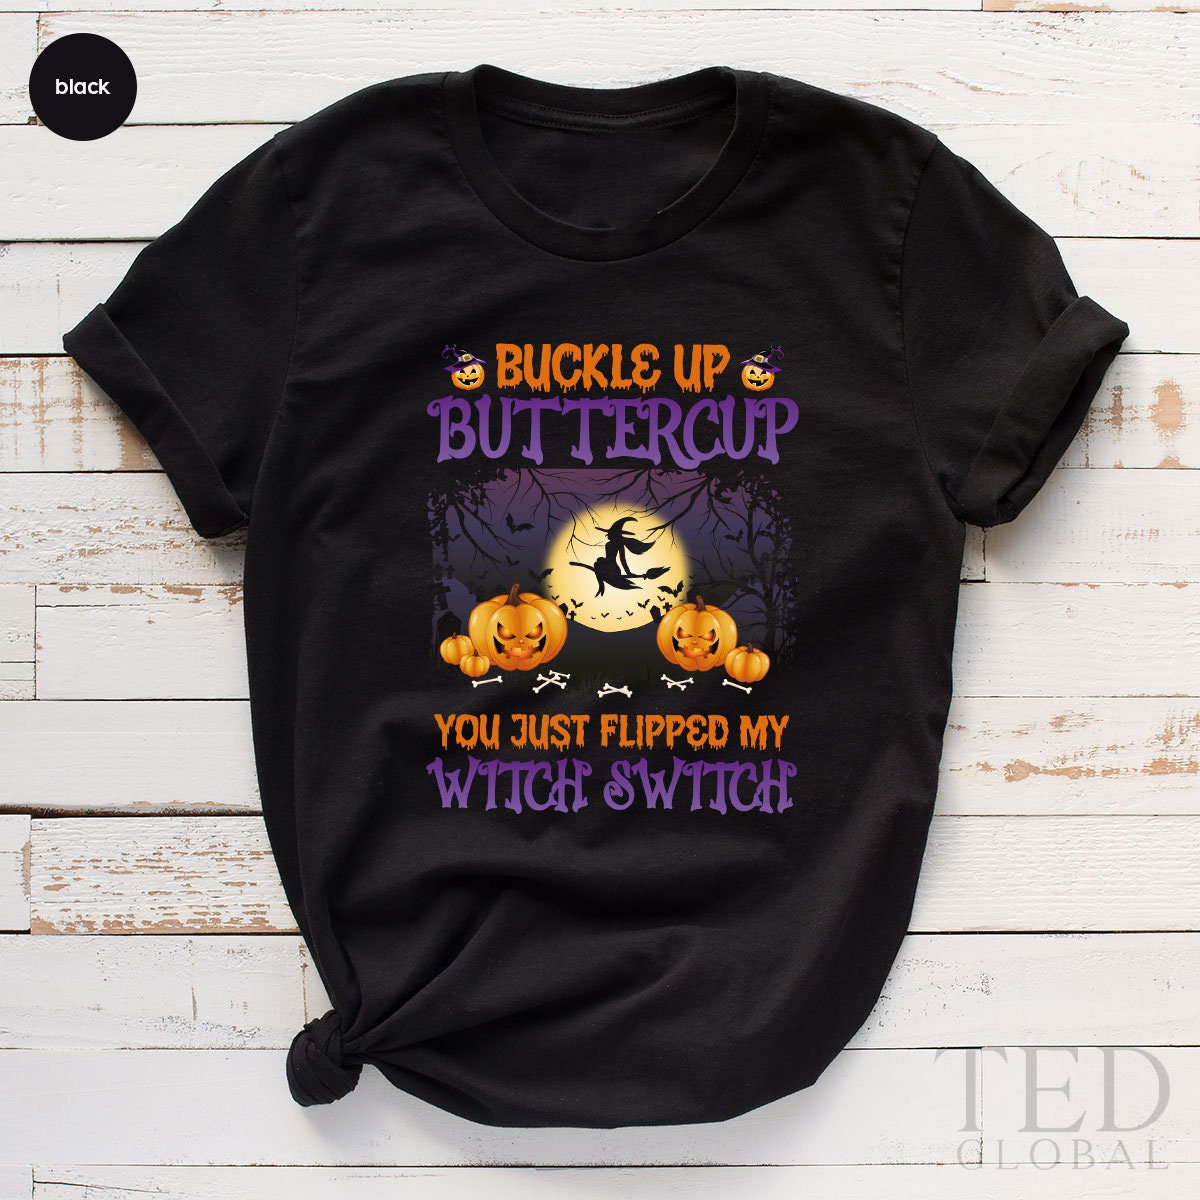 Halloween Shirt, Witch Switch T Shirt, Halloween Party Shirt, Buckle Up Buttercup Shirts, Fall Tee, Cute Pumpkin T-Shirt, Gift For Halloween - Fastdeliverytees.com